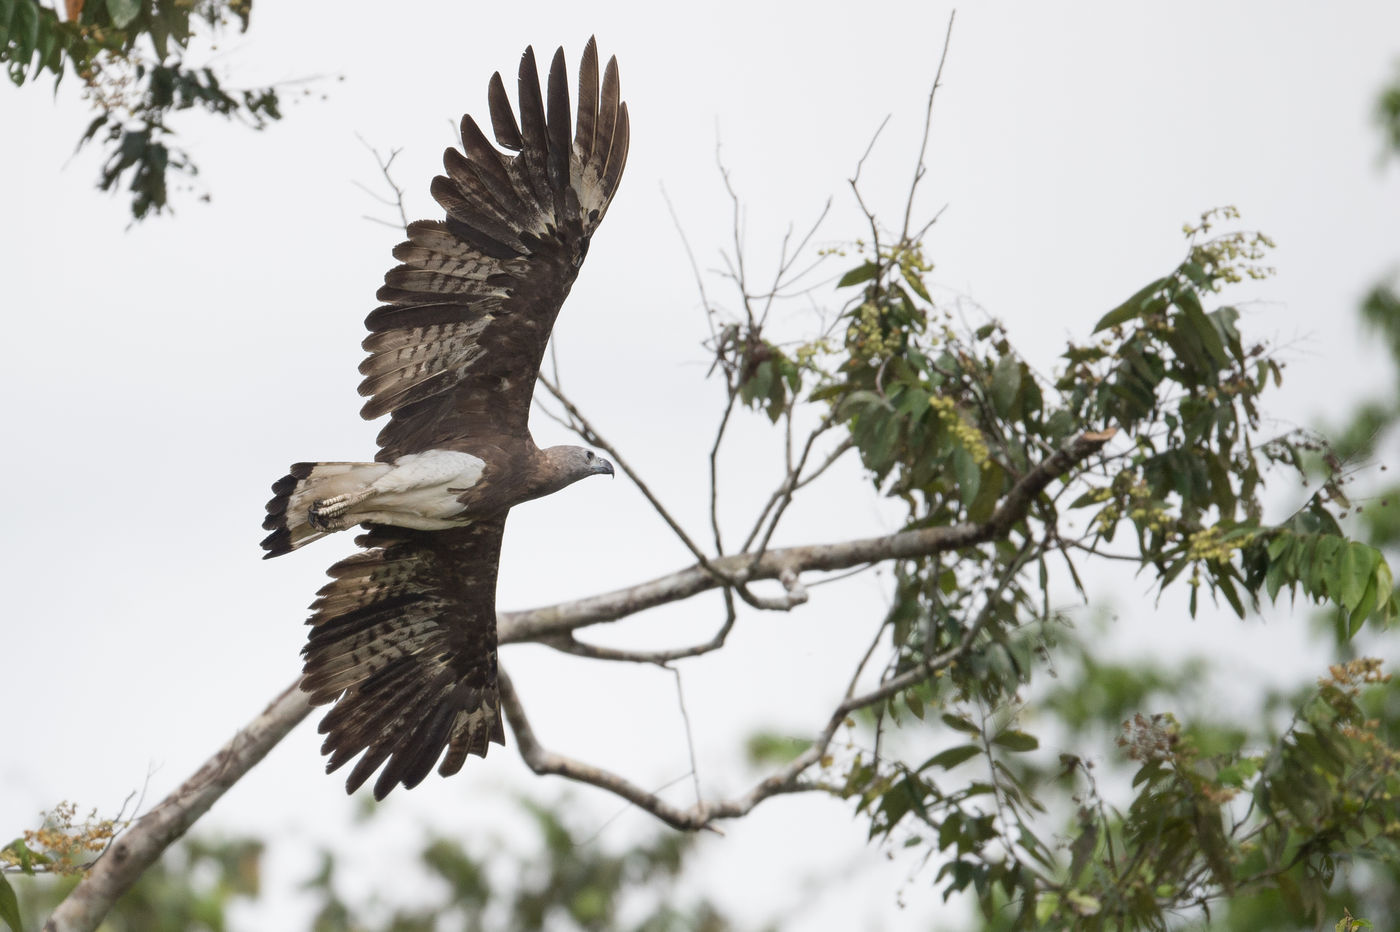 Grey-headed fish eagle, een krachtige rover van de rivieroevers en steeds te verwachten op deze reis. © Billy Herman